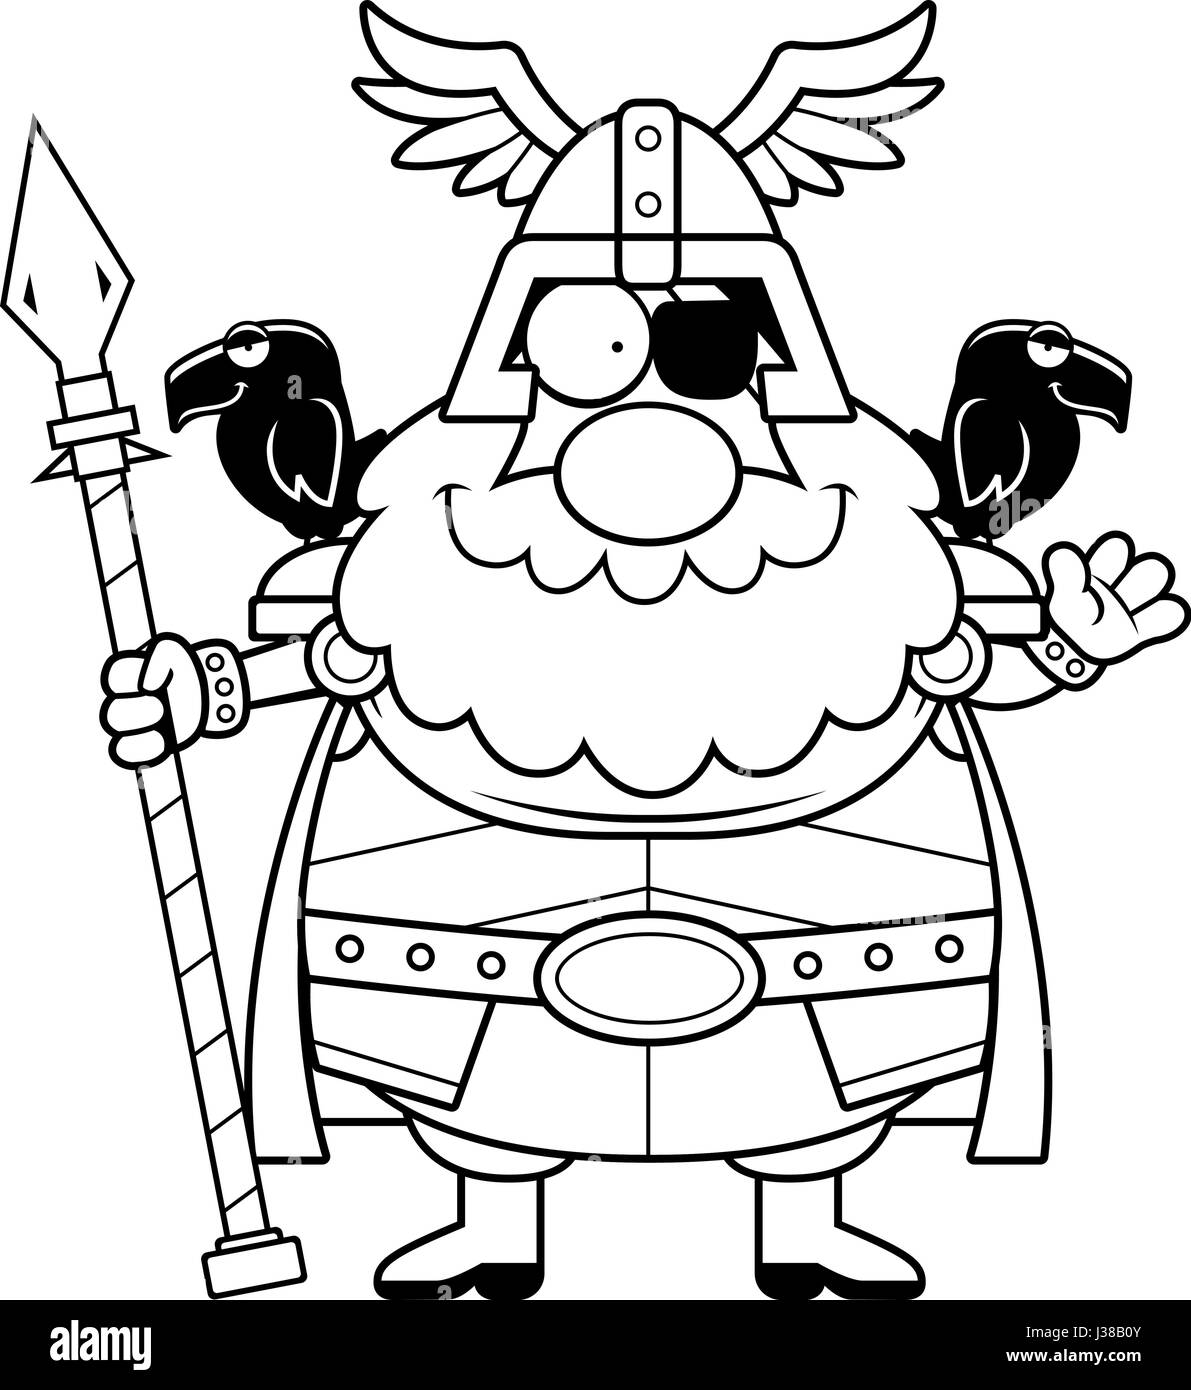 Eine Cartoon-Illustration von Odin winken. Stock Vektor